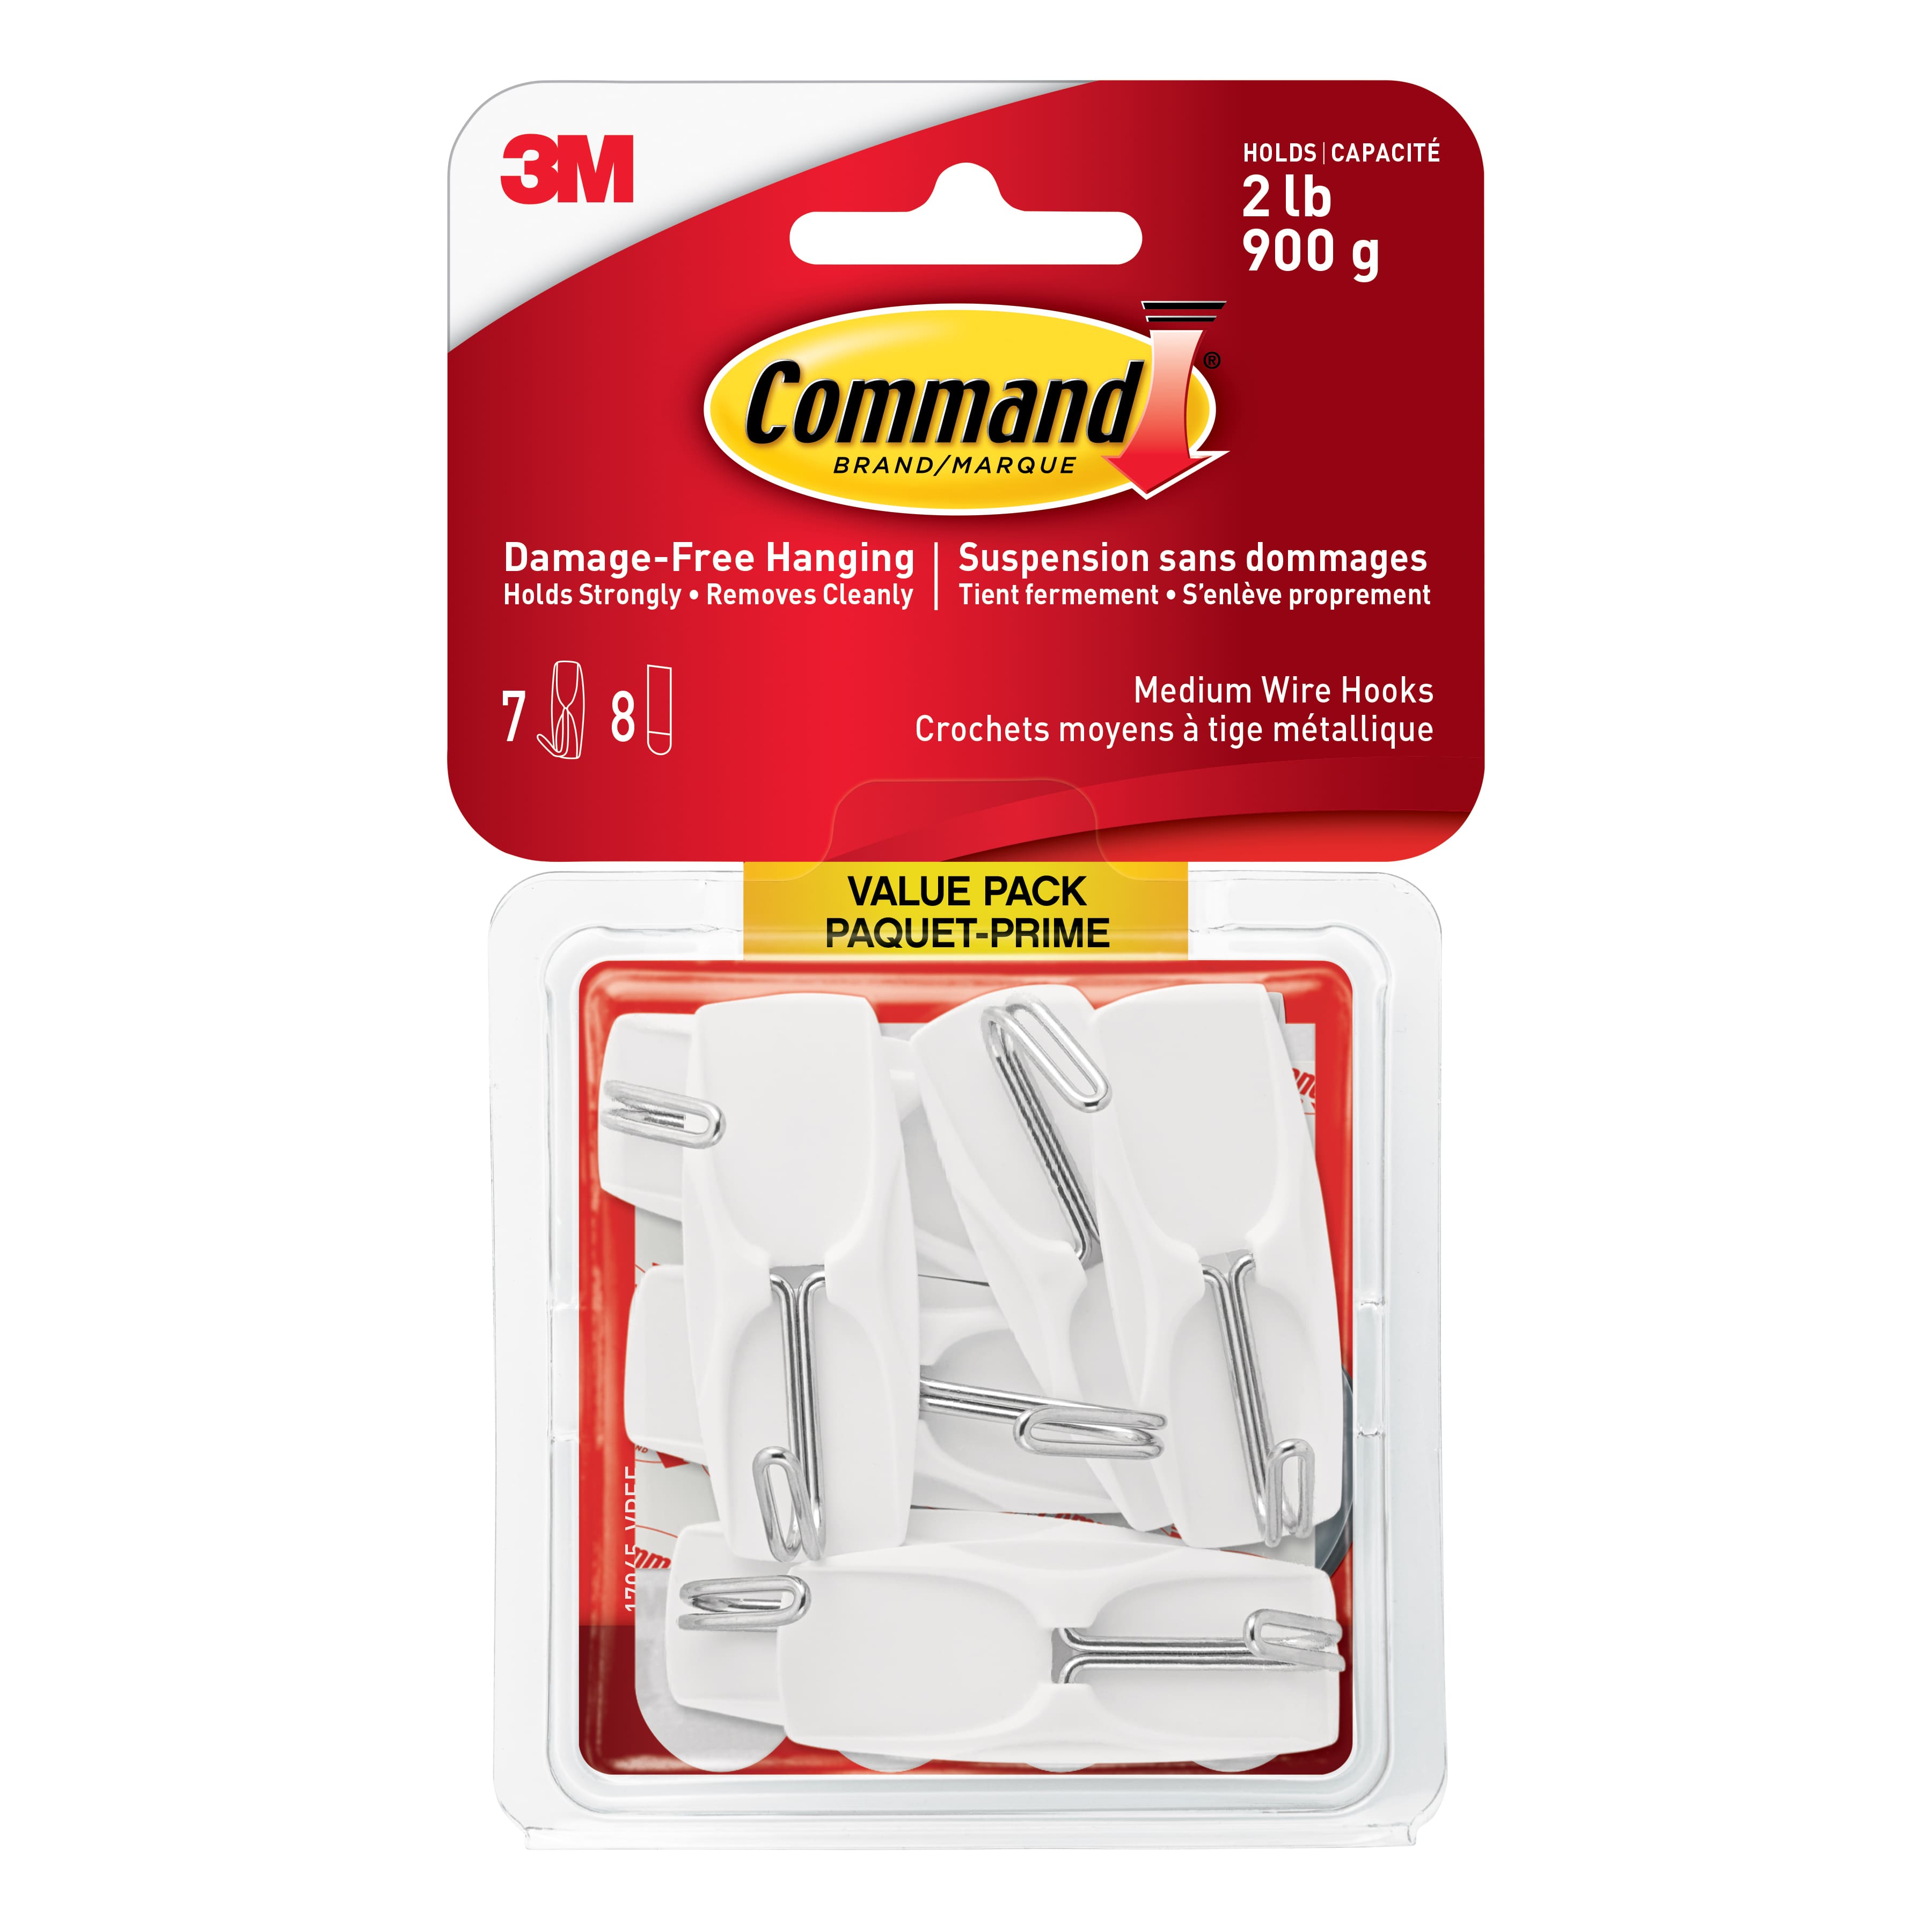 Buy in Bulk - 12 Packs: 7 ct. (84 total) Command™ White Medium Wire Hooks